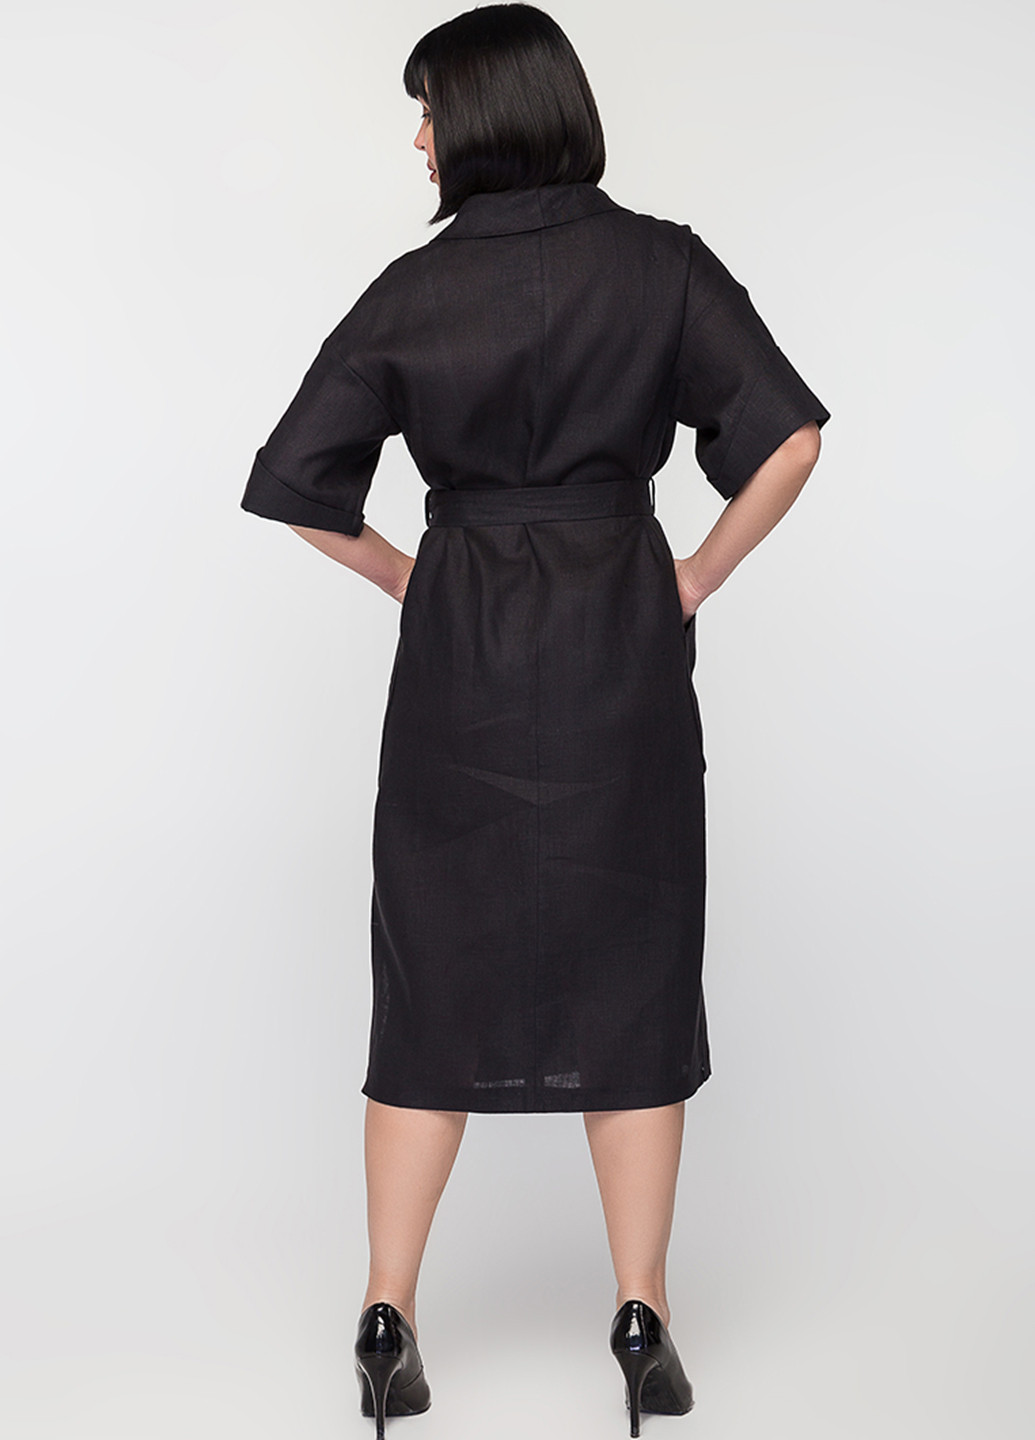 Черное деловое платье на запах O`zona milano однотонное